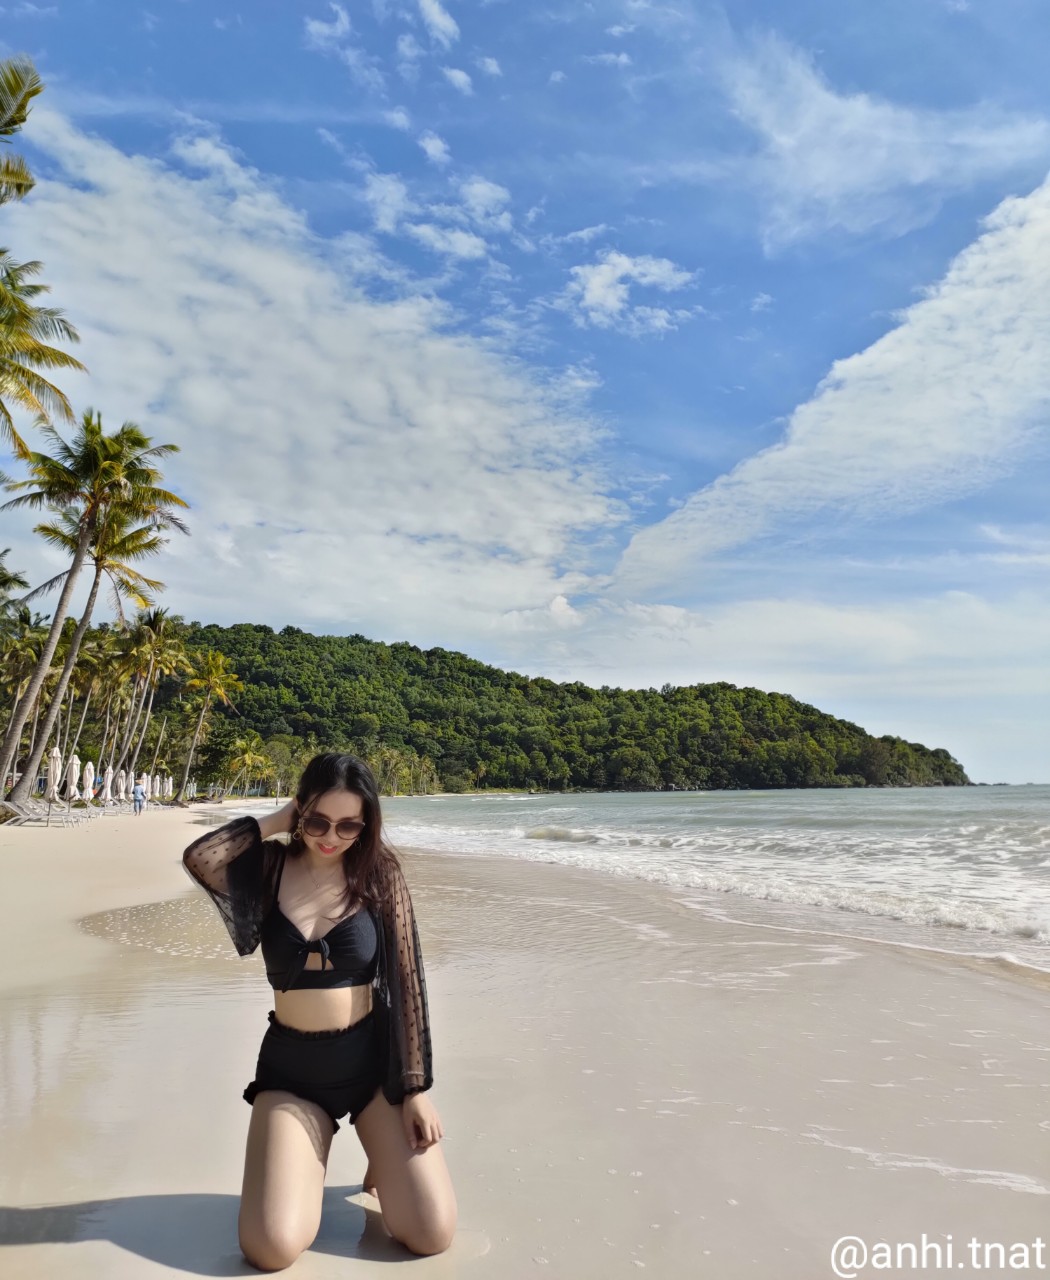 Bạn đã check-in những bãi biển đẹp nào của TP. đảo Phú Quốc rồi? - Nguồn ảnh: @anhi.tnat